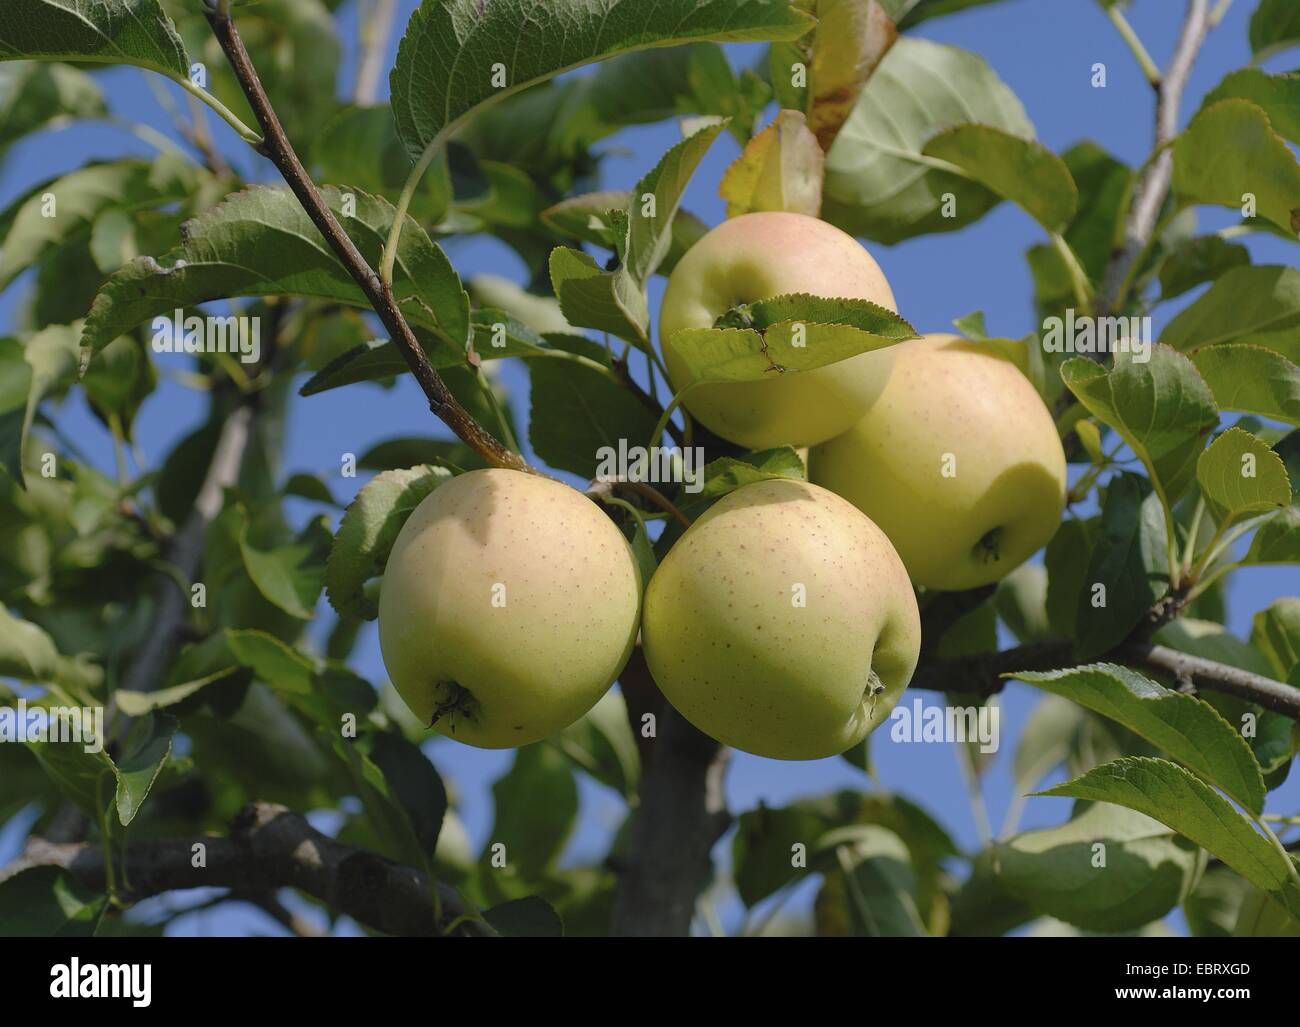 Apfelbaum (Malus Domestica 'Golden Delicious', Malus Domestica Golden Delicious), Sorte Golden Delicious Äpfel an einem Baum Stockfoto